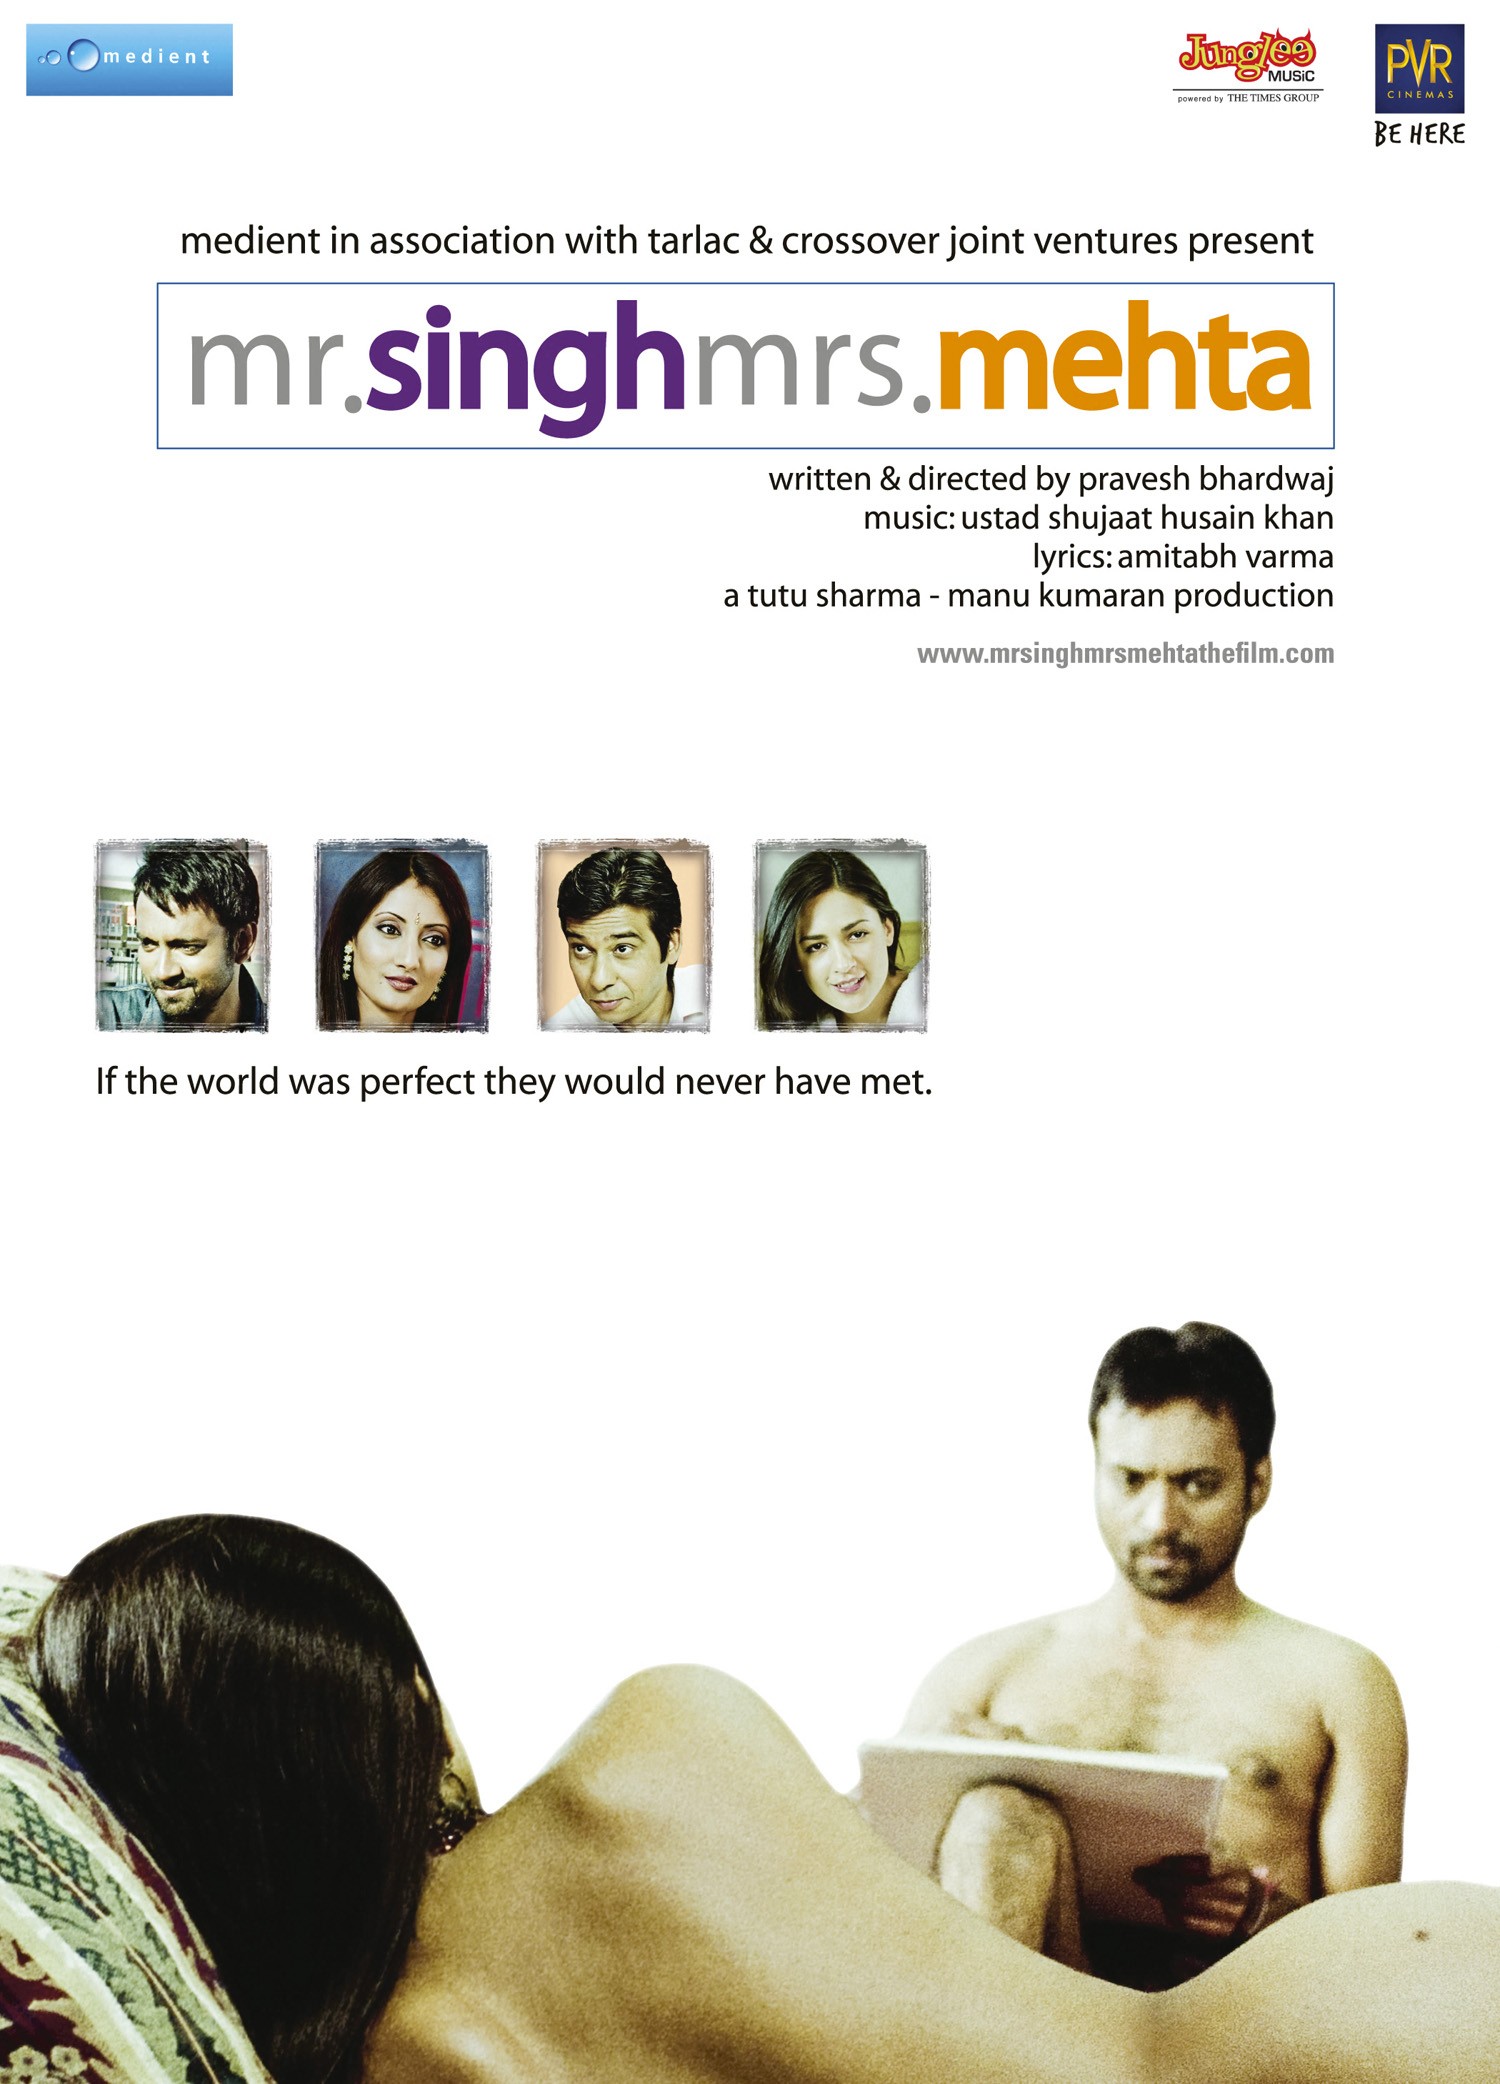 Mega Sized Movie Poster Image for Mr. Singh/Mrs. Mehta 